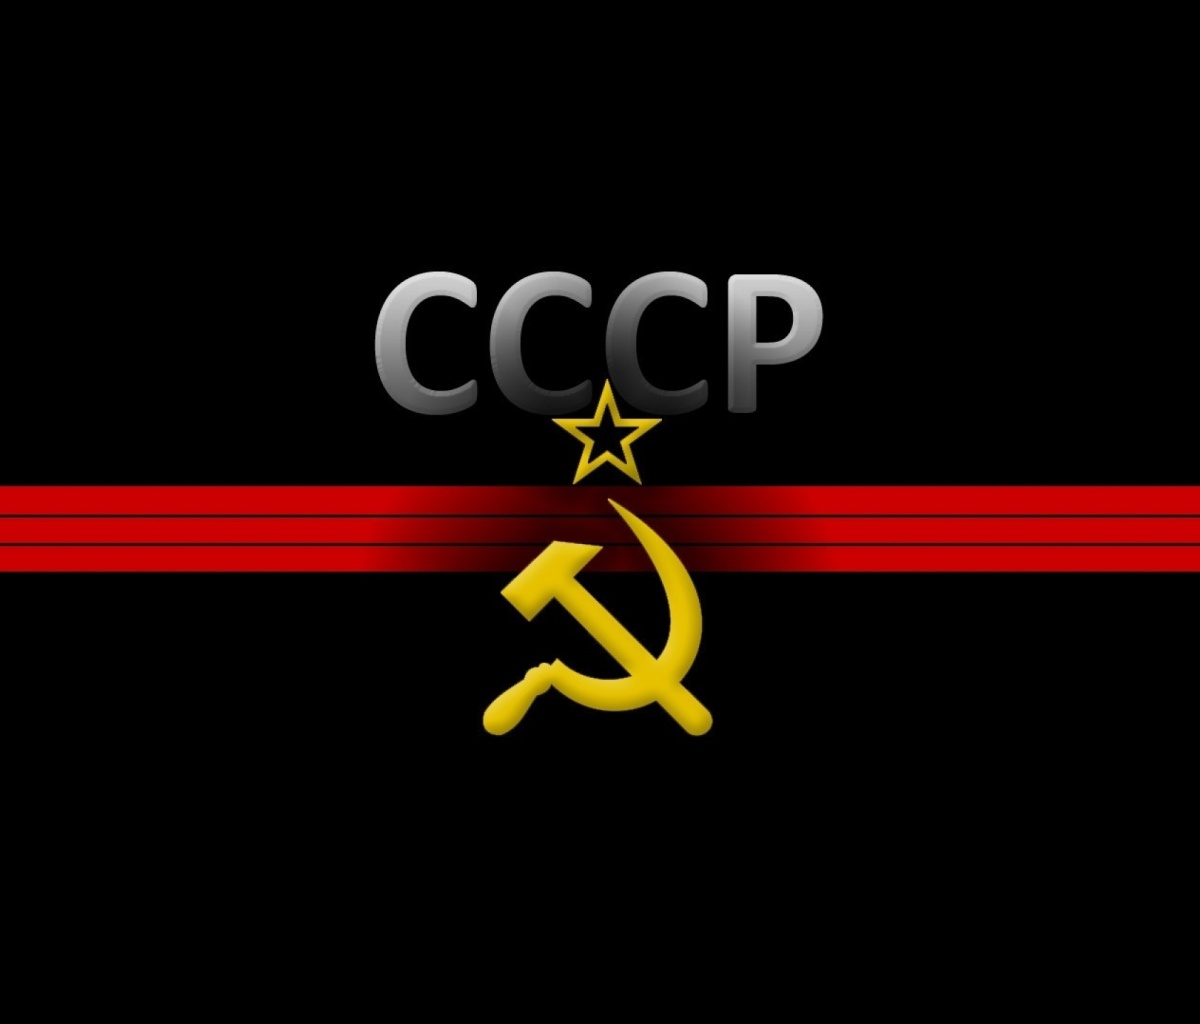 USSR and Communism Symbol screenshot #1 1200x1024